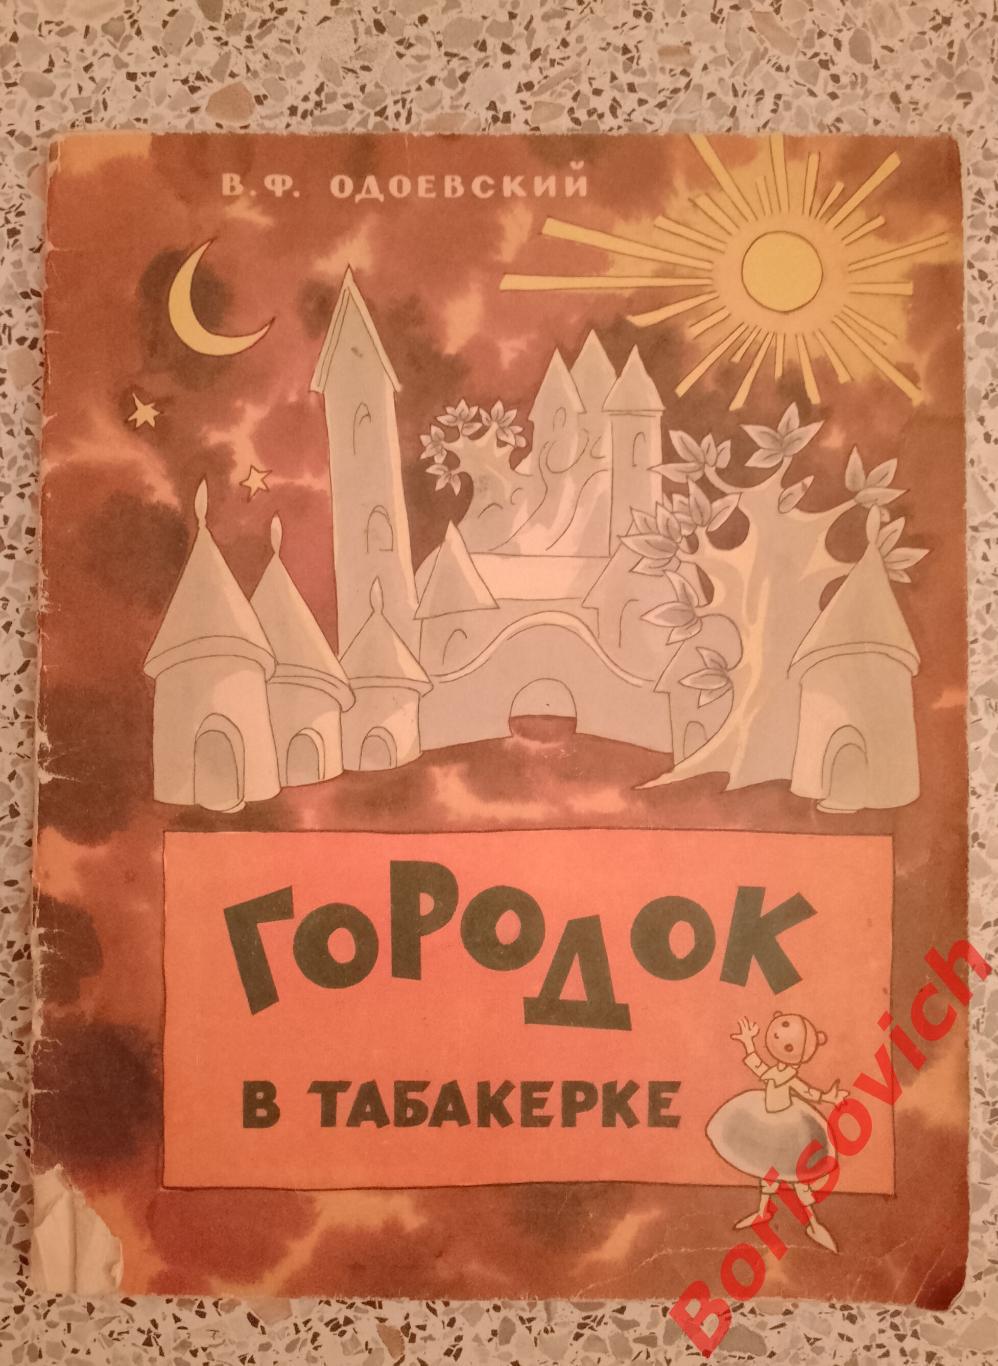 В. Ф. Одоевский Городок в табакерке 1972 г